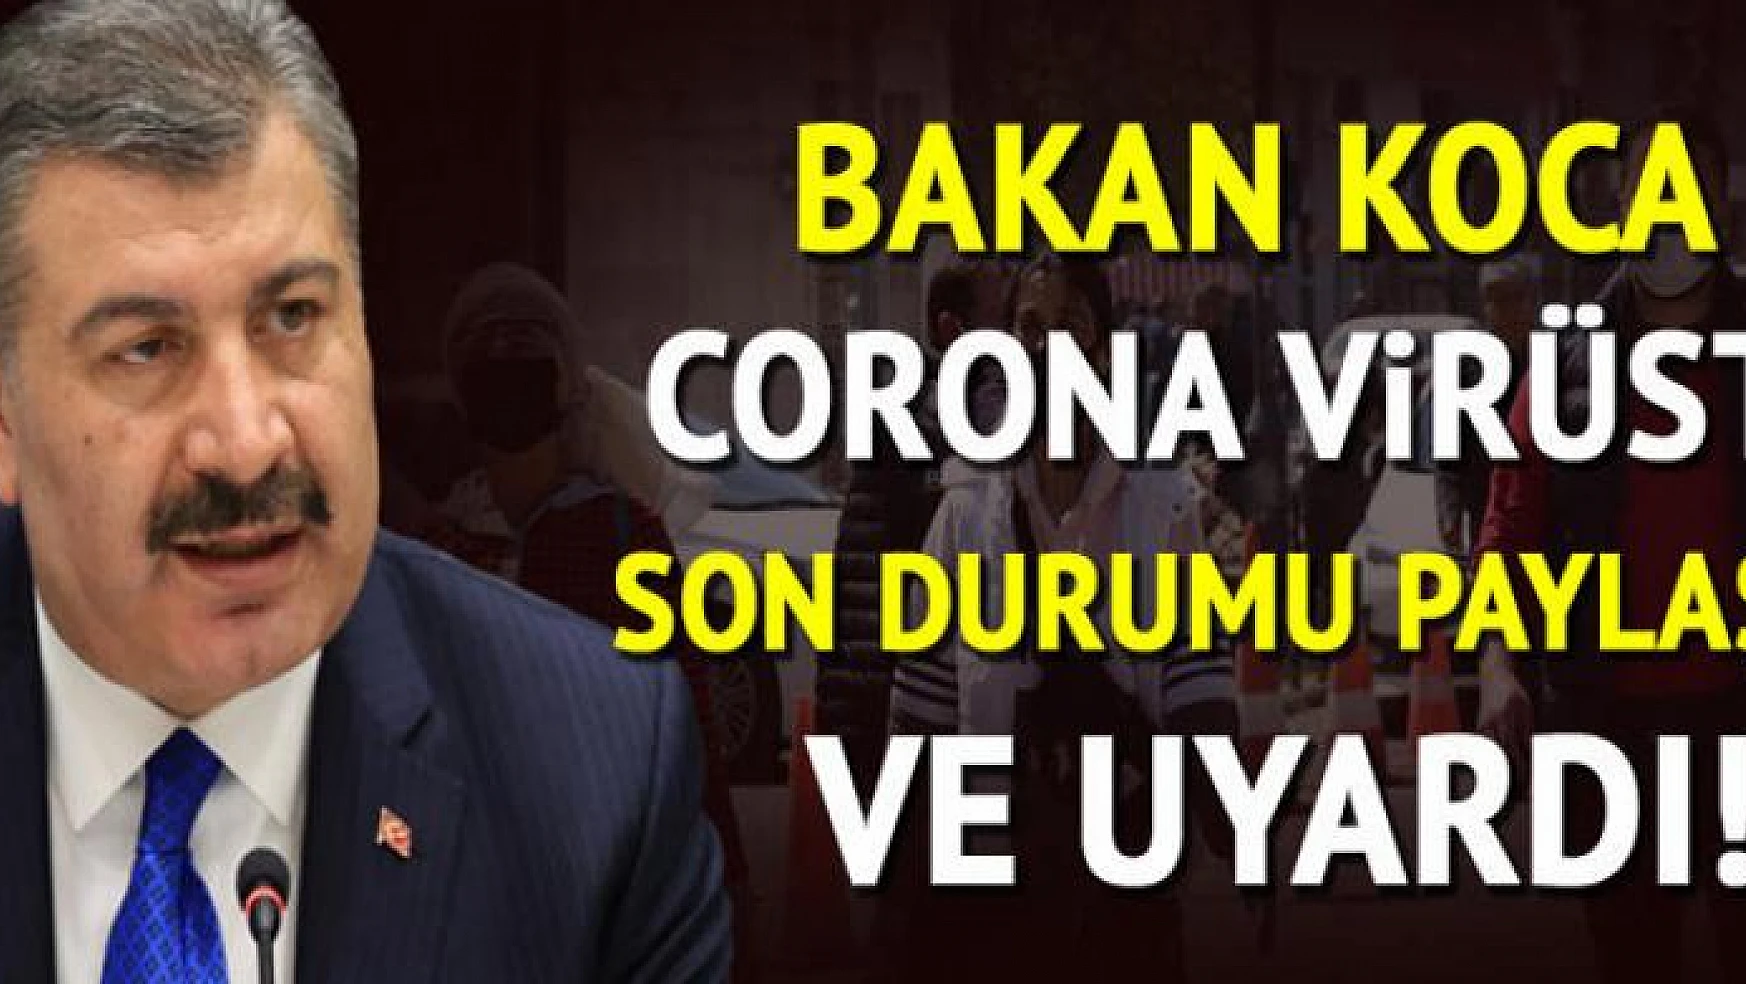 Türkiye'de son 24 saatte 1.217 kişiye koronavirüs tanısı konuldu, 19 kişi hayatını kaybetti